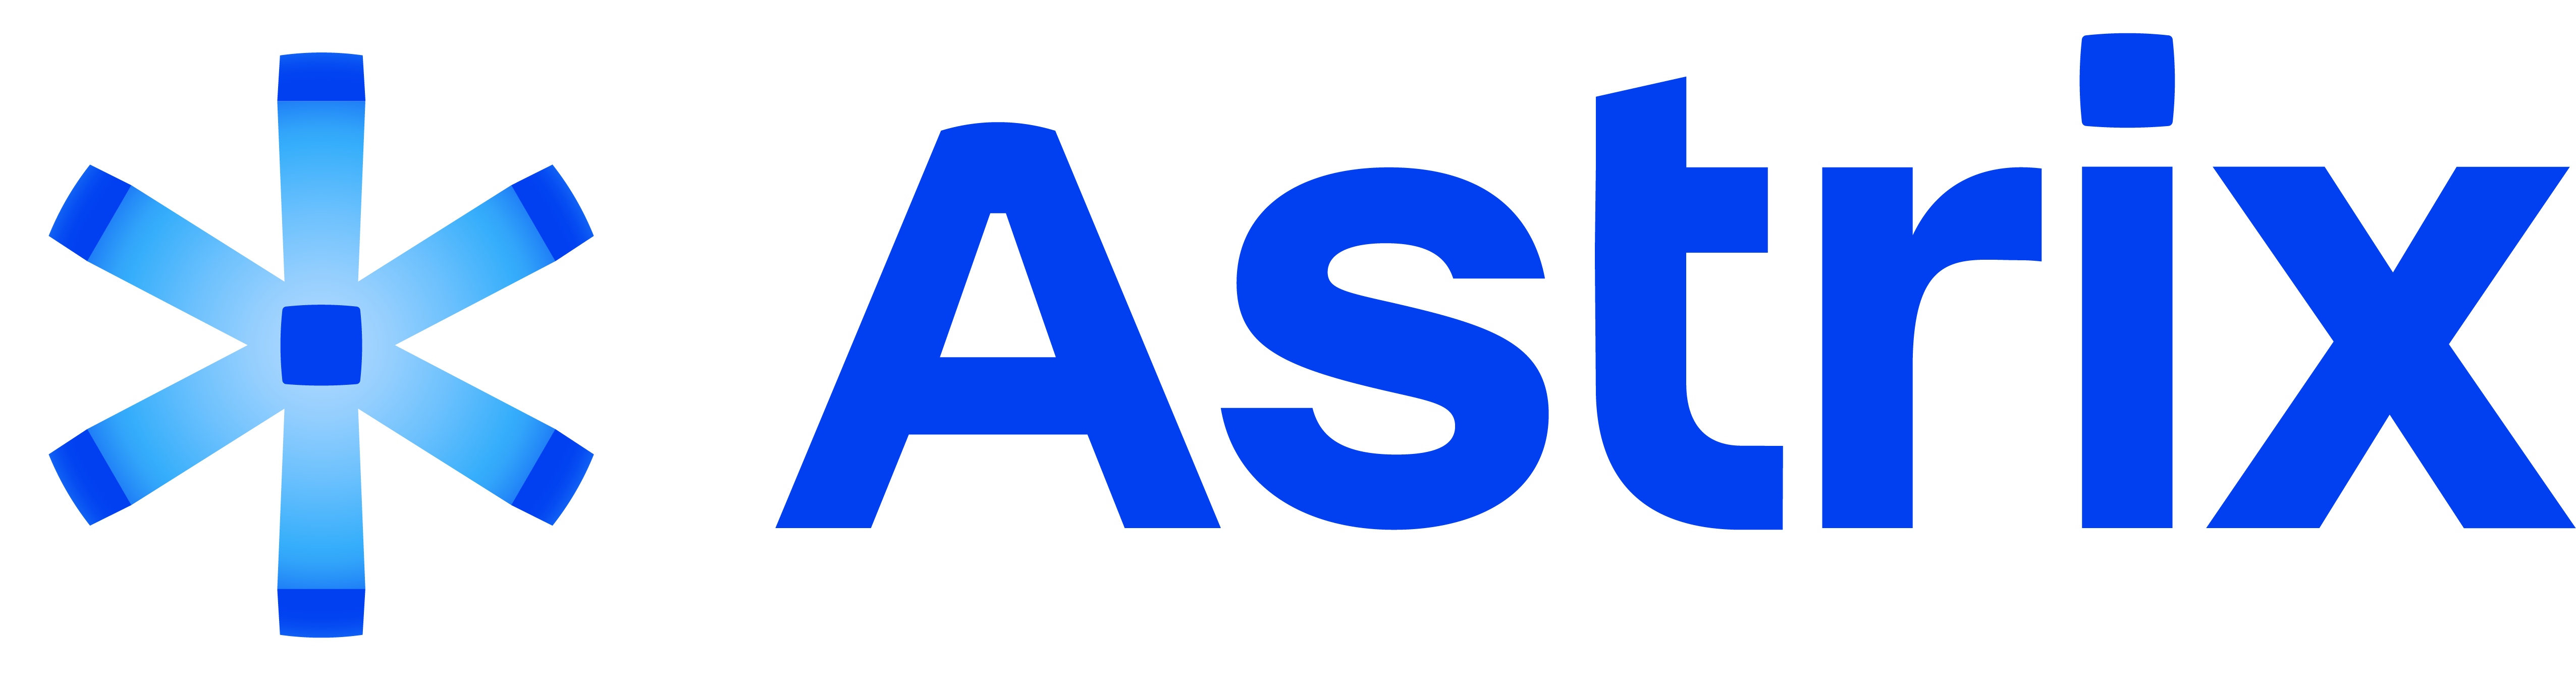 Astrix Logo.png